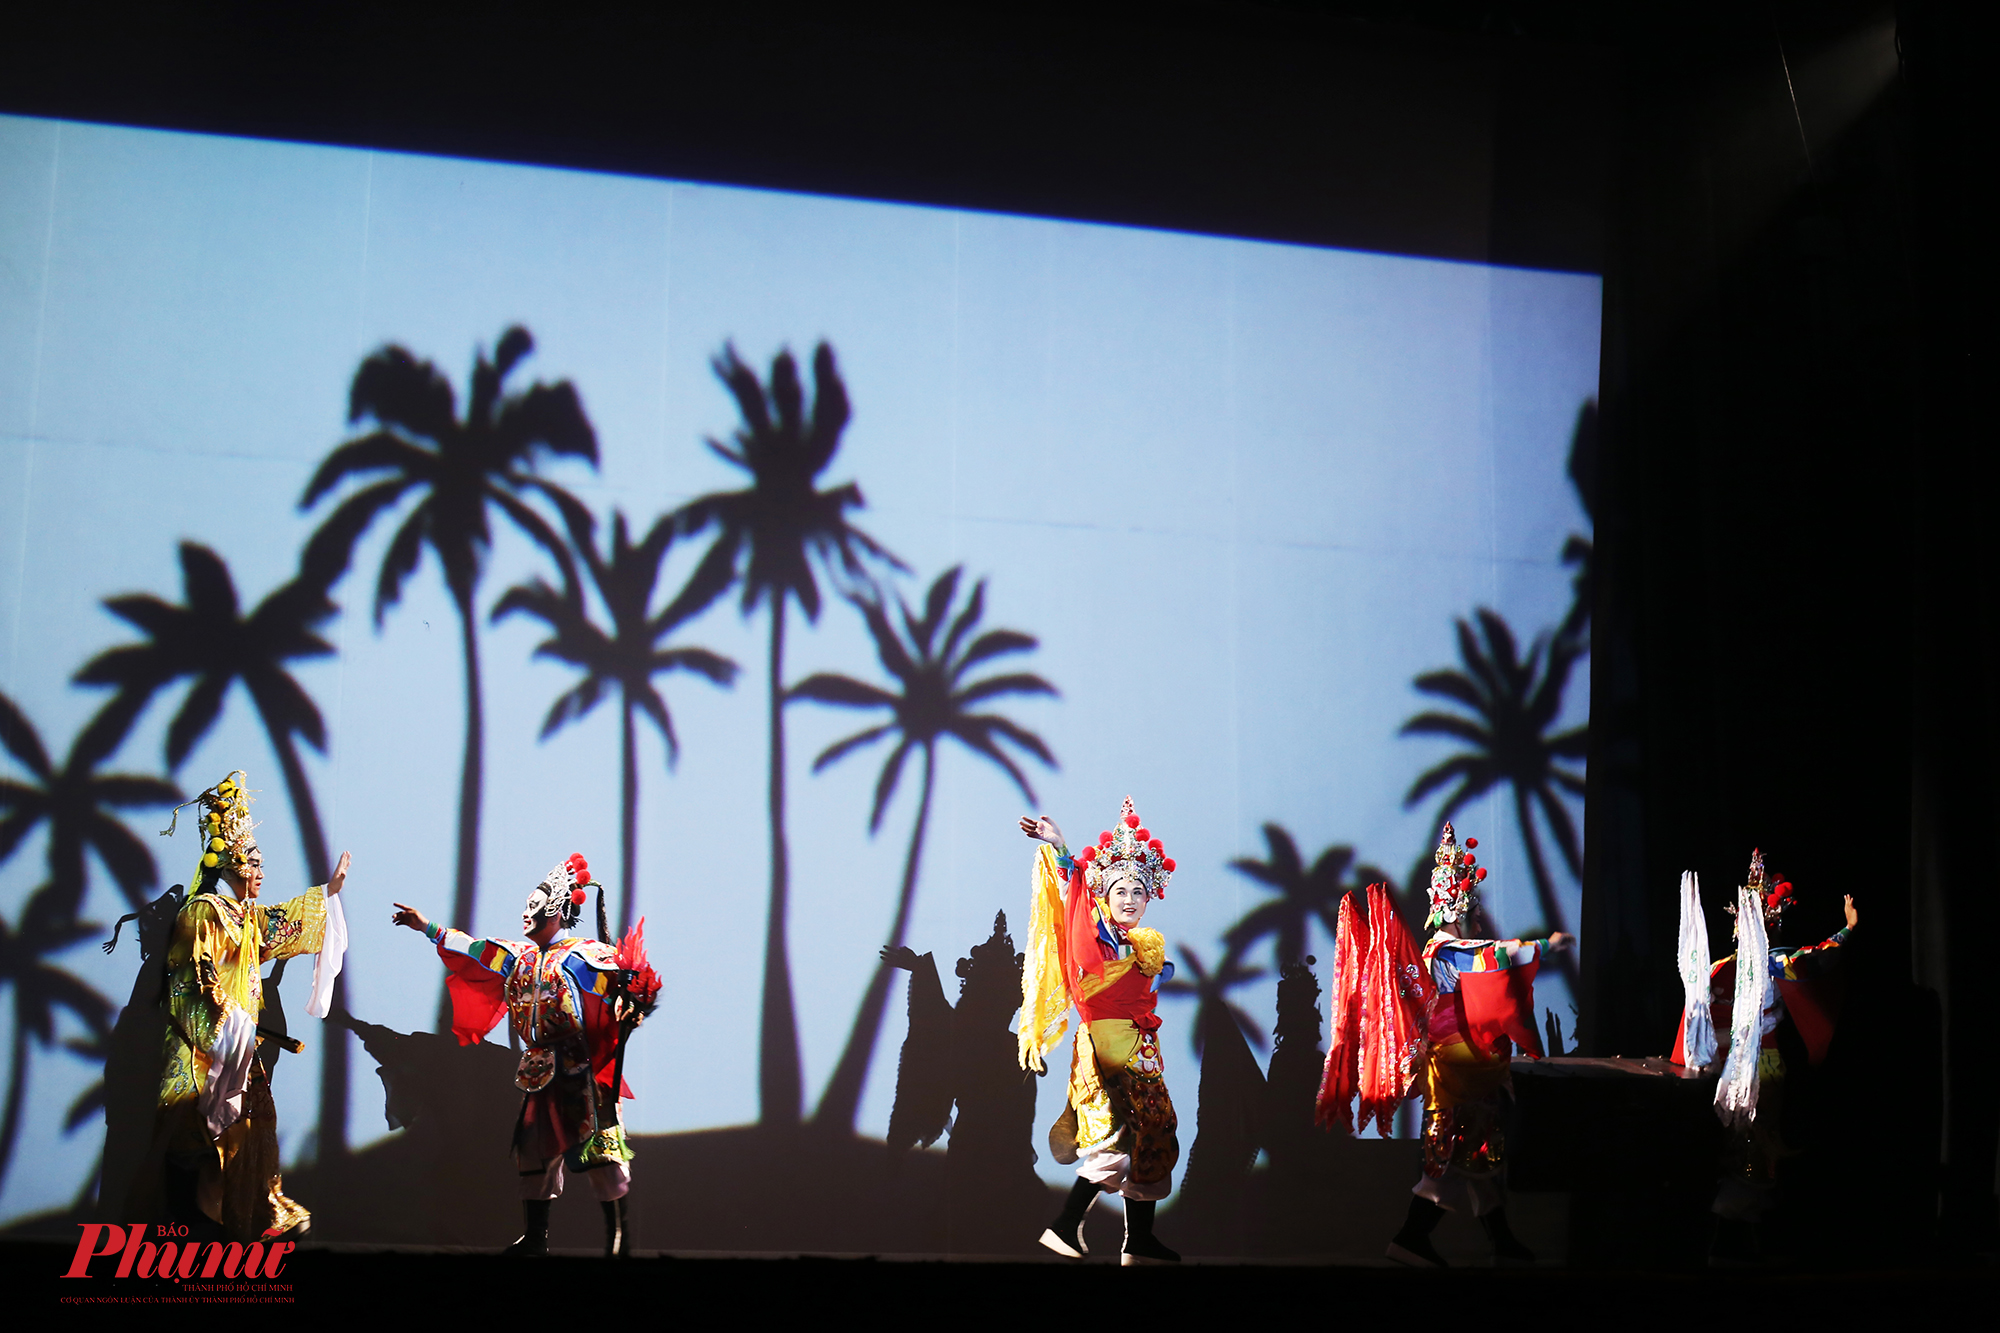 Hình ảnh lung linh, đầy màu sắc của nghệ sĩ hát bội trên sân khấu